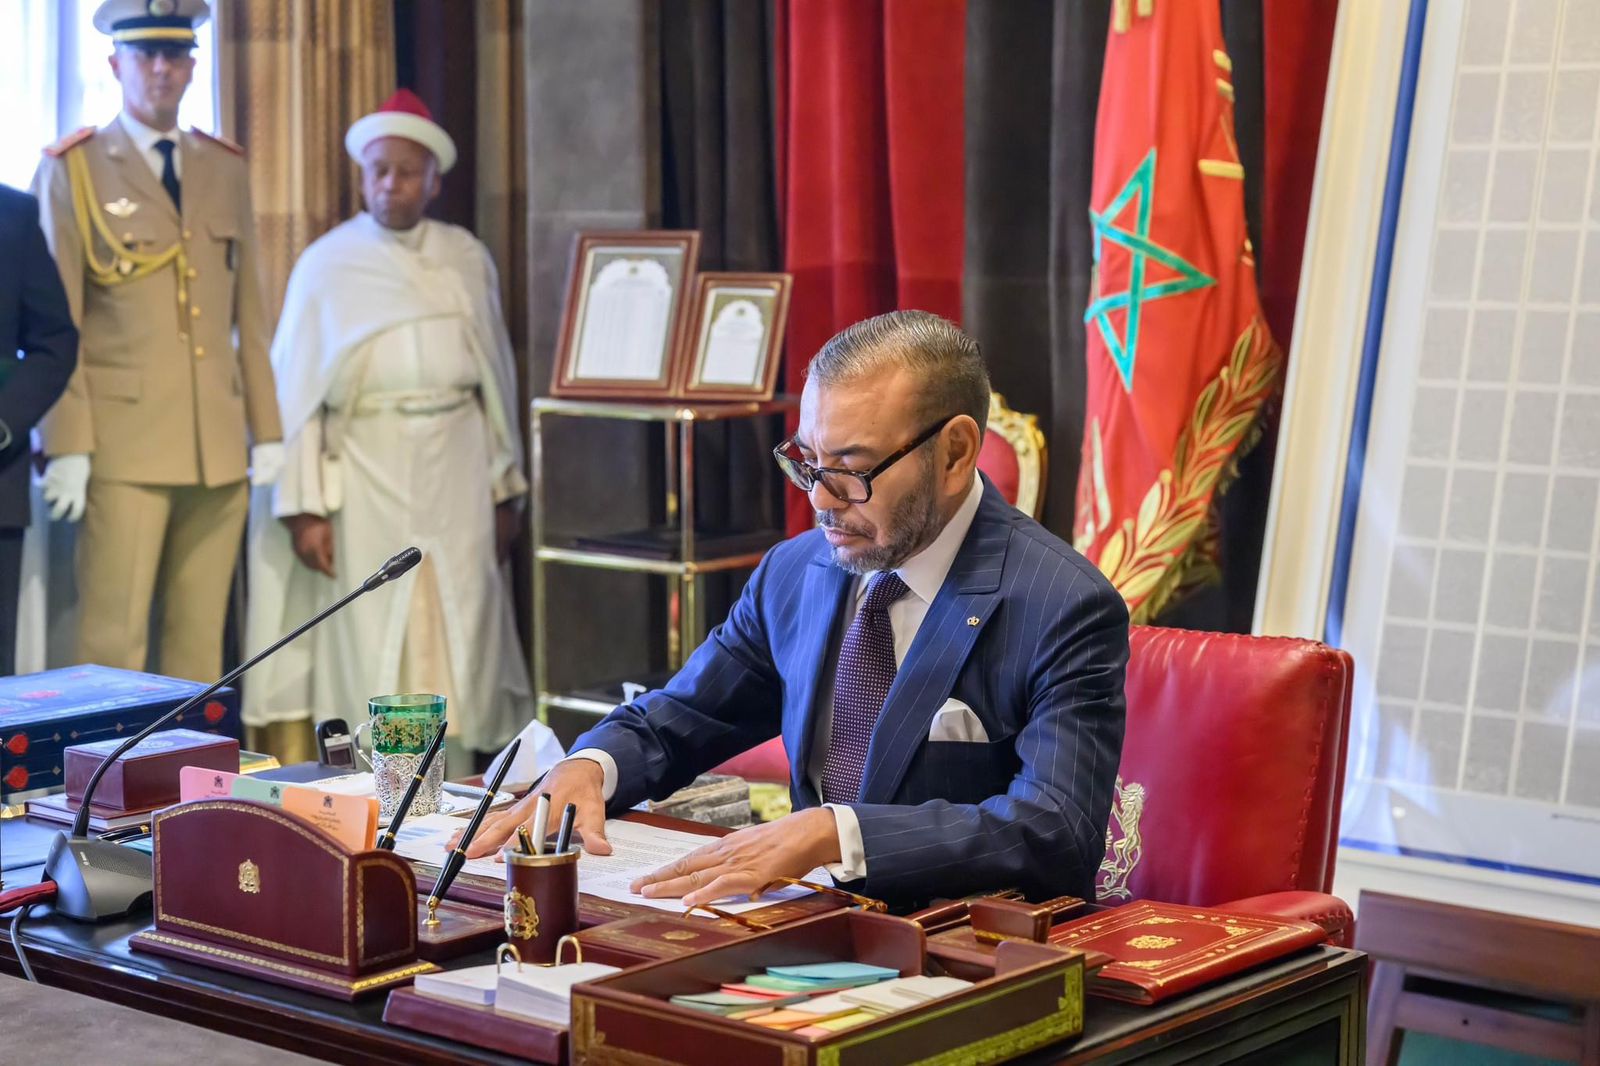 رسائل من جلالة الملك الى قادة 4 فرق للإنقاذ شاركت دولها في دعم المغرب هذا ما جاء فيها